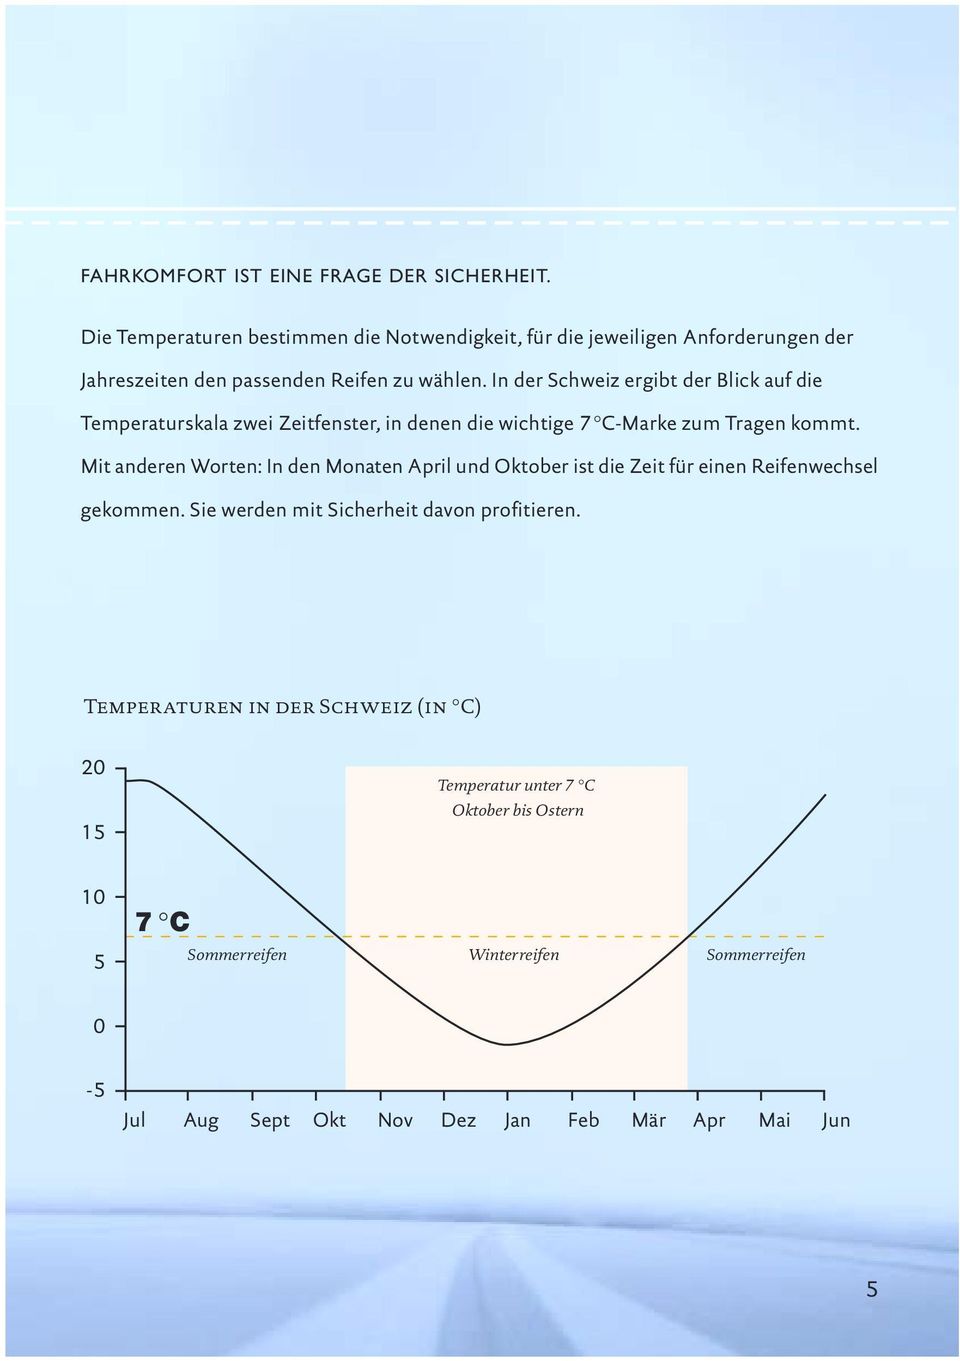 In der Schweiz ergibt der Blick auf die Temperaturskala zwei Zeitfenster, in denen die wichtige 7 C-Marke zum Tragen kommt.